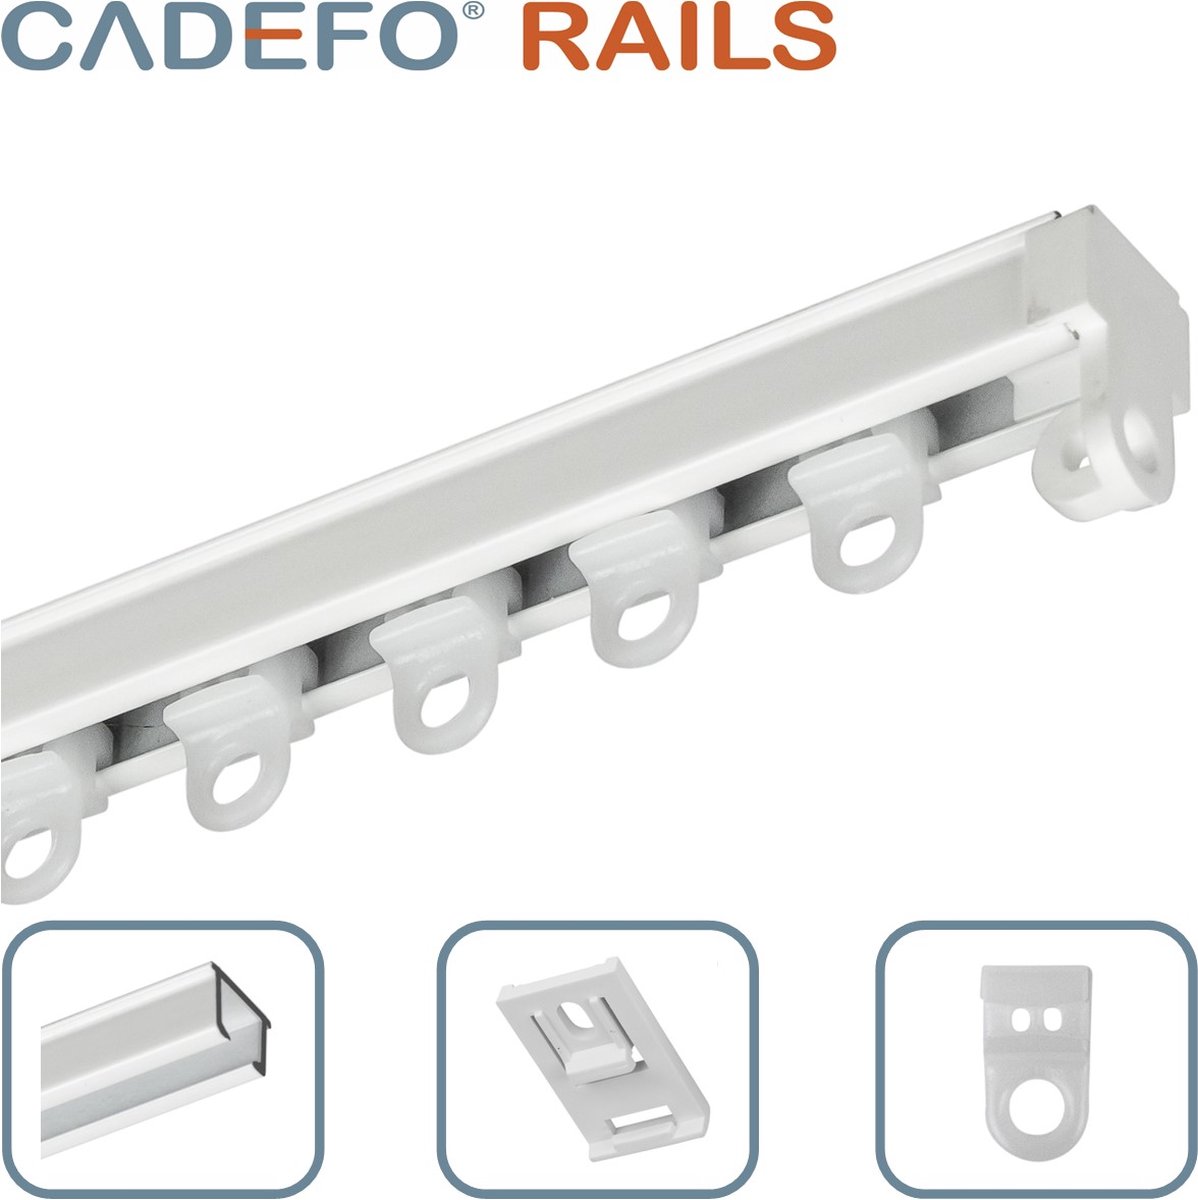 CADEFO RAILS (451 - 500 cm) Gordijnrails - Compleet op maat! - UIT 1 STUK - Leverbaar tot 6 meter - Plafondbevestiging - Lengte 475 cm